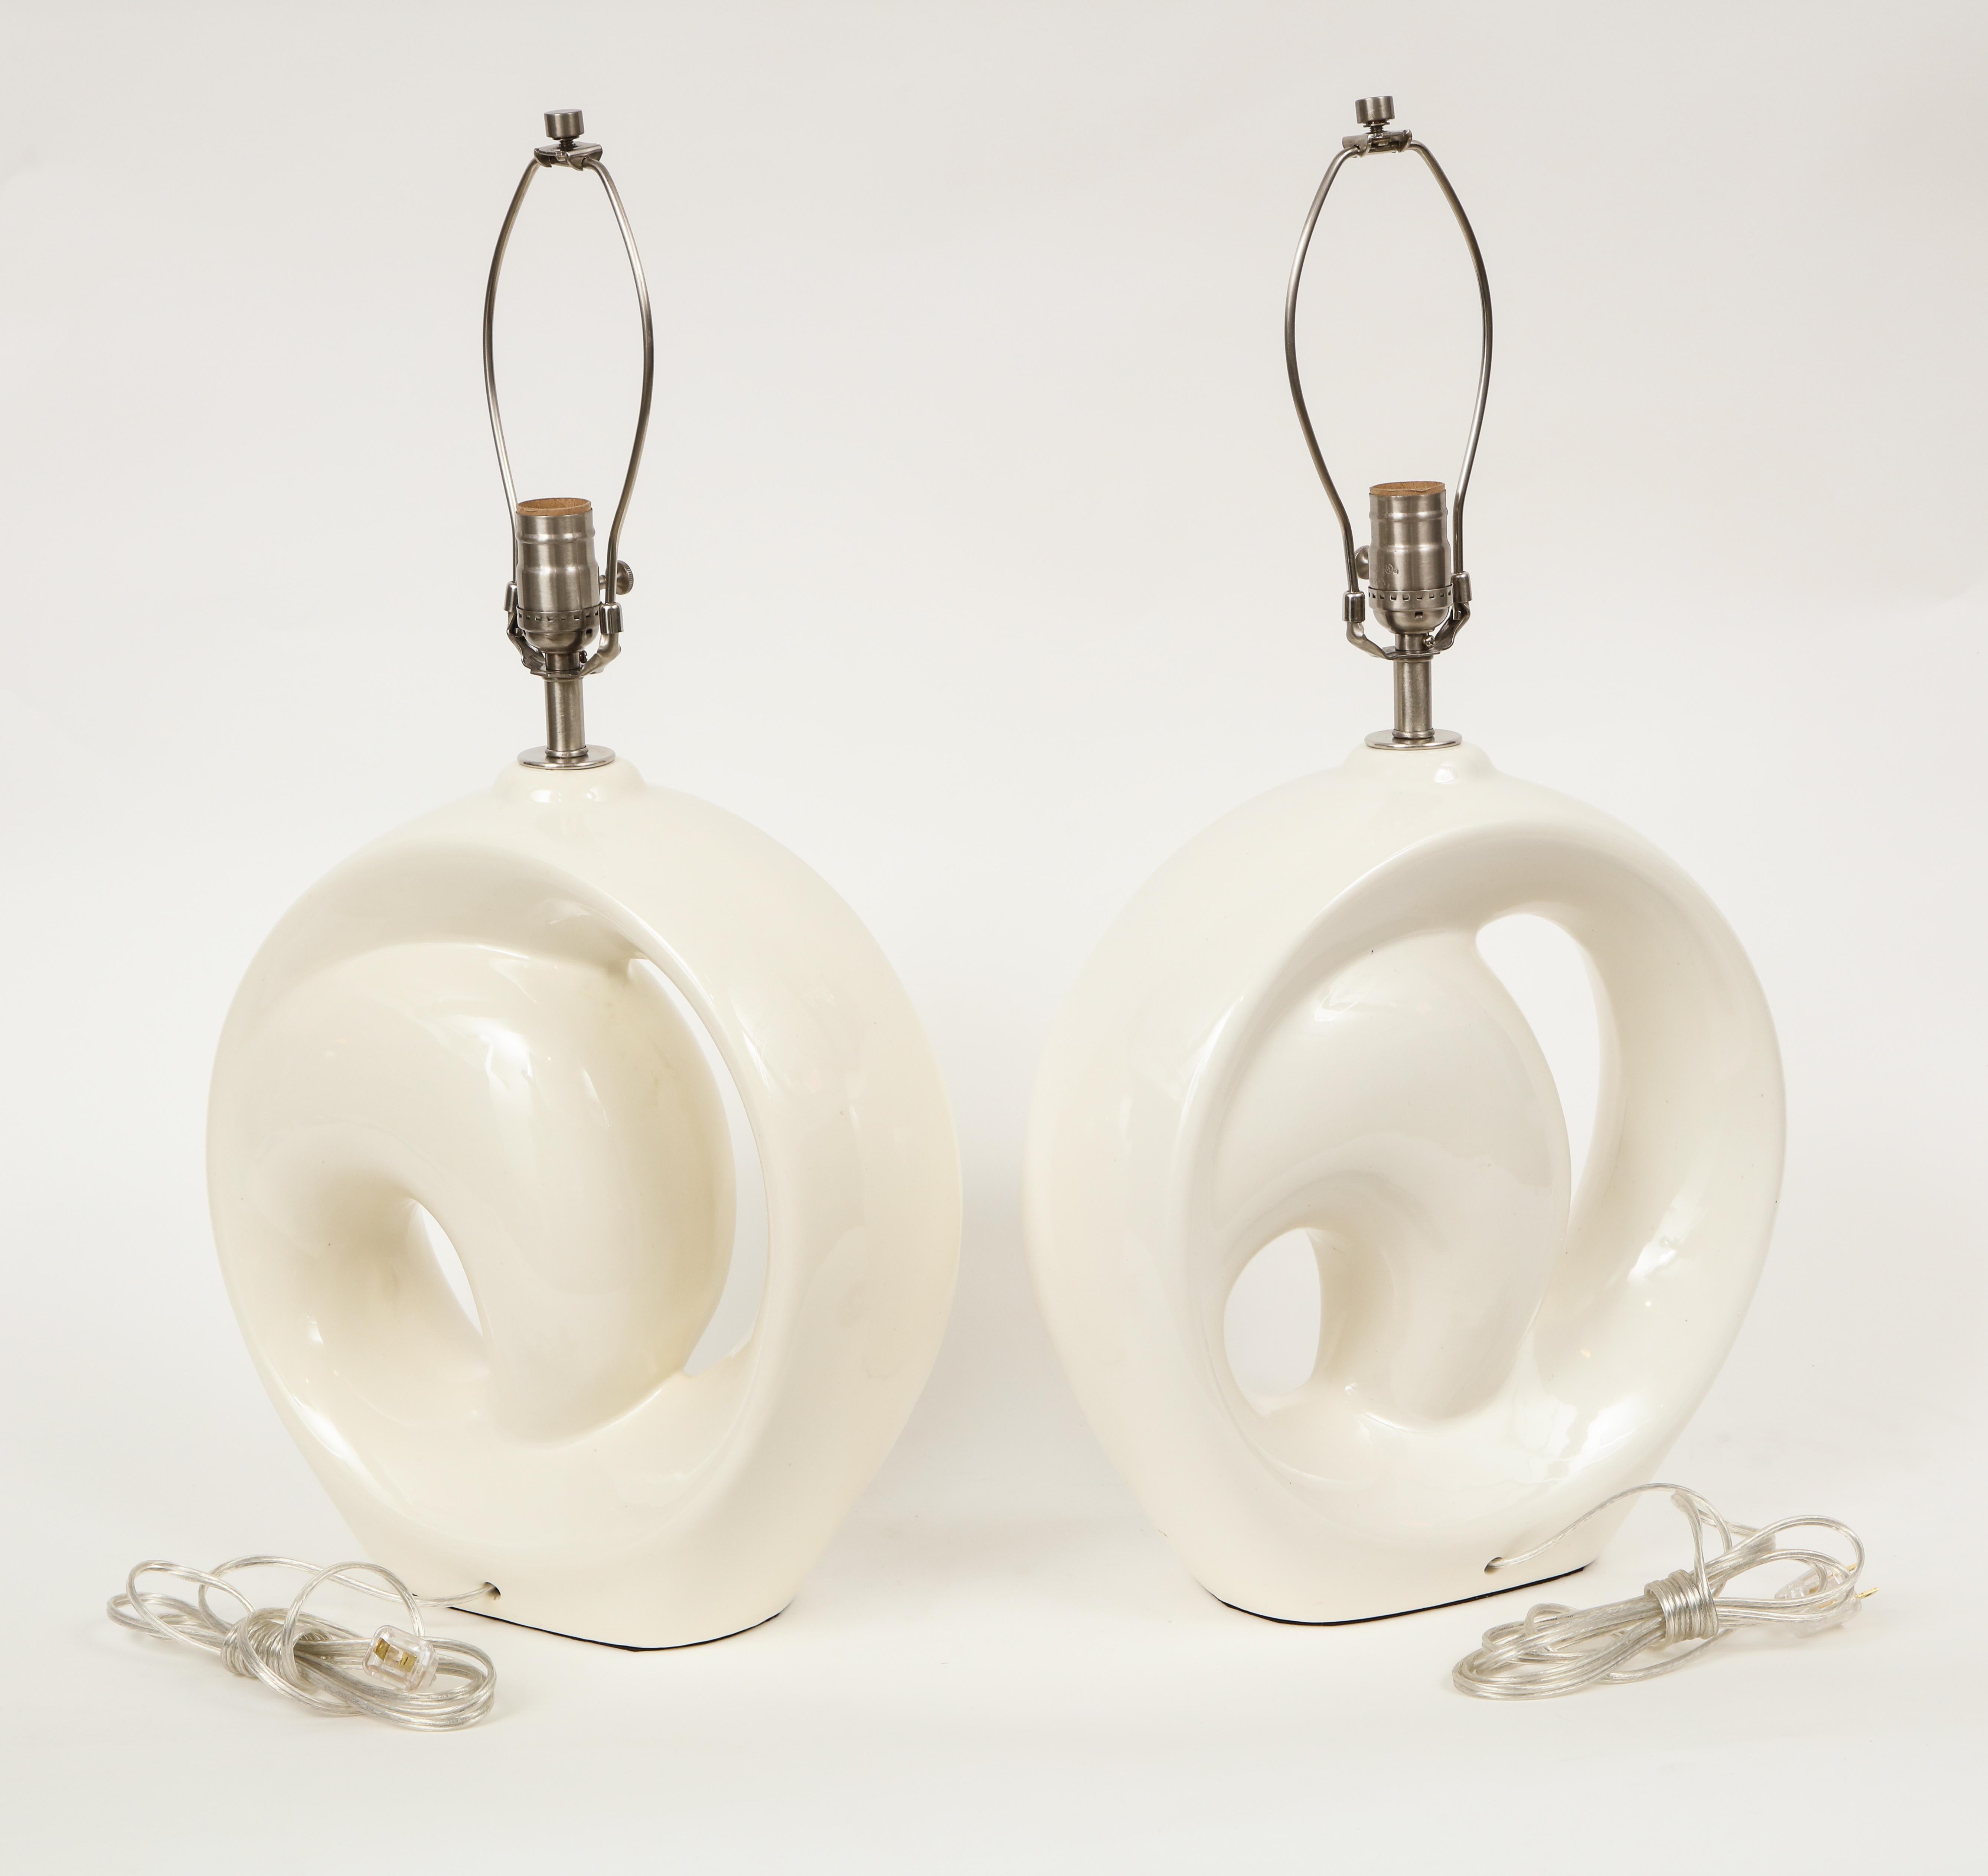 Ein Paar modernistischer Porzellanlampen mit milchig-weißer Glasur und vernickelten Beschlägen. Für die Verwendung in den USA umverdrahtet. 100W Glühbirne maximal.